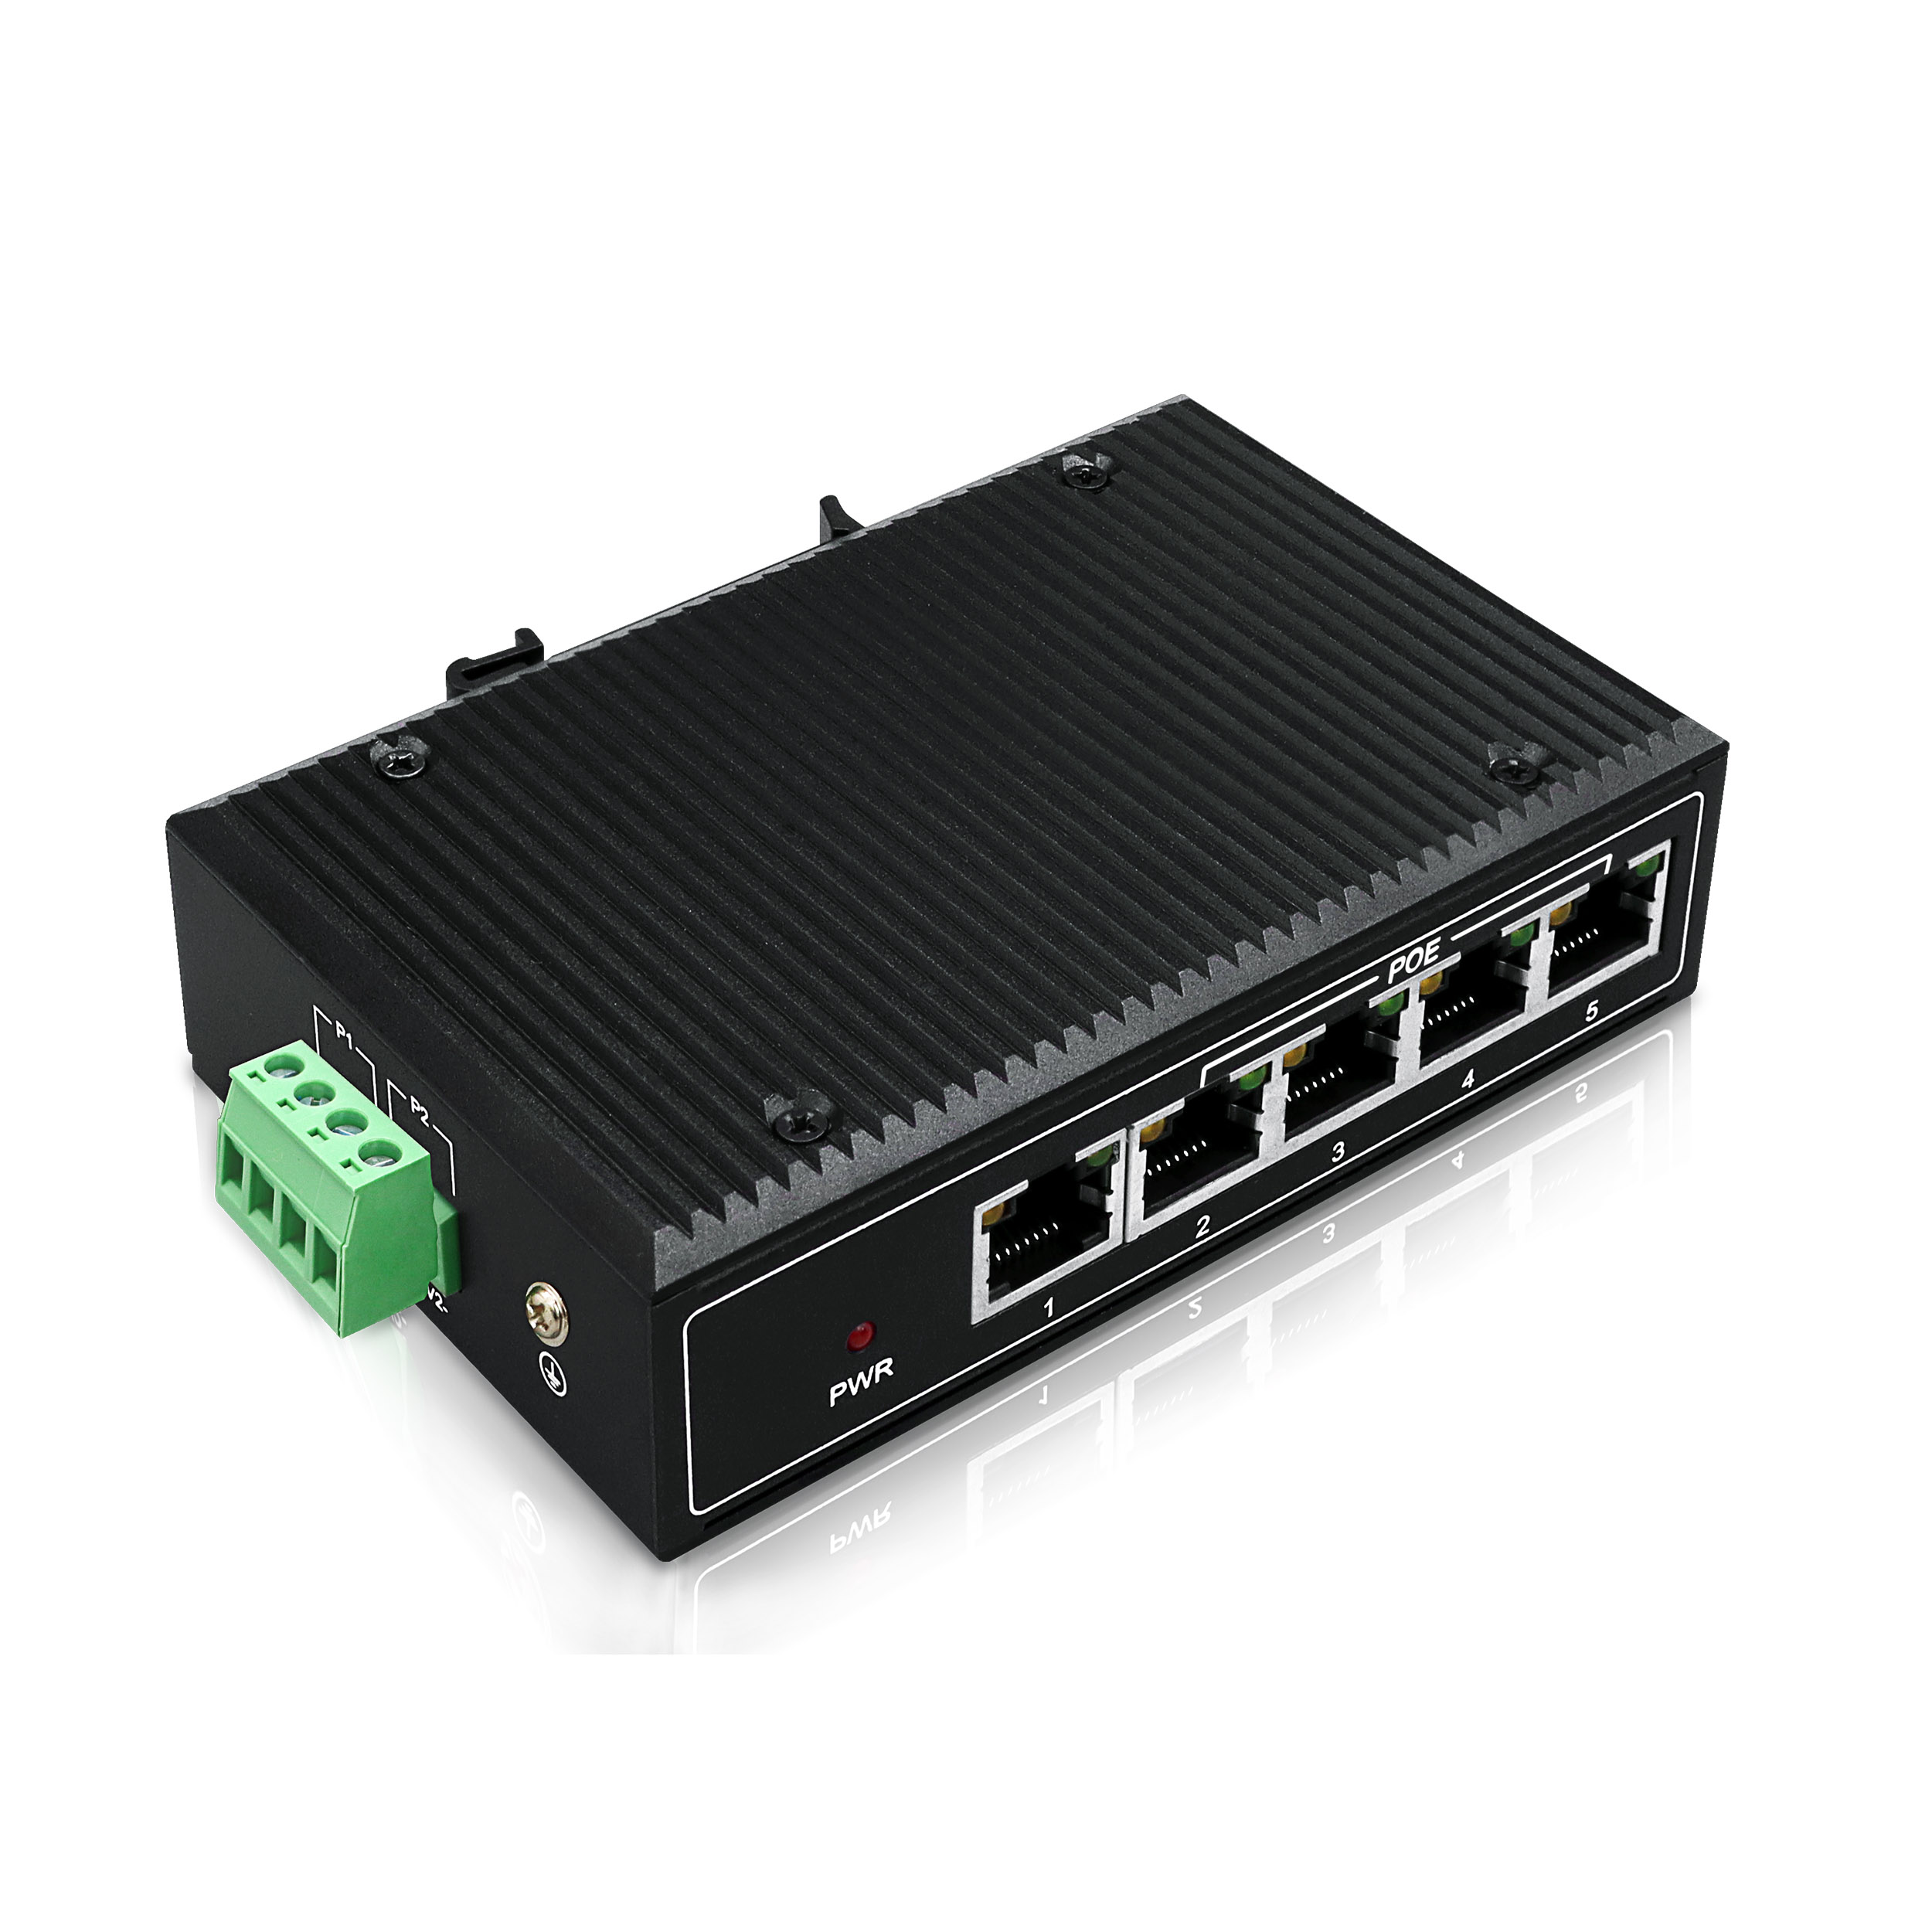 YN-SF105P1 Industrial Ethernet PoE Switch